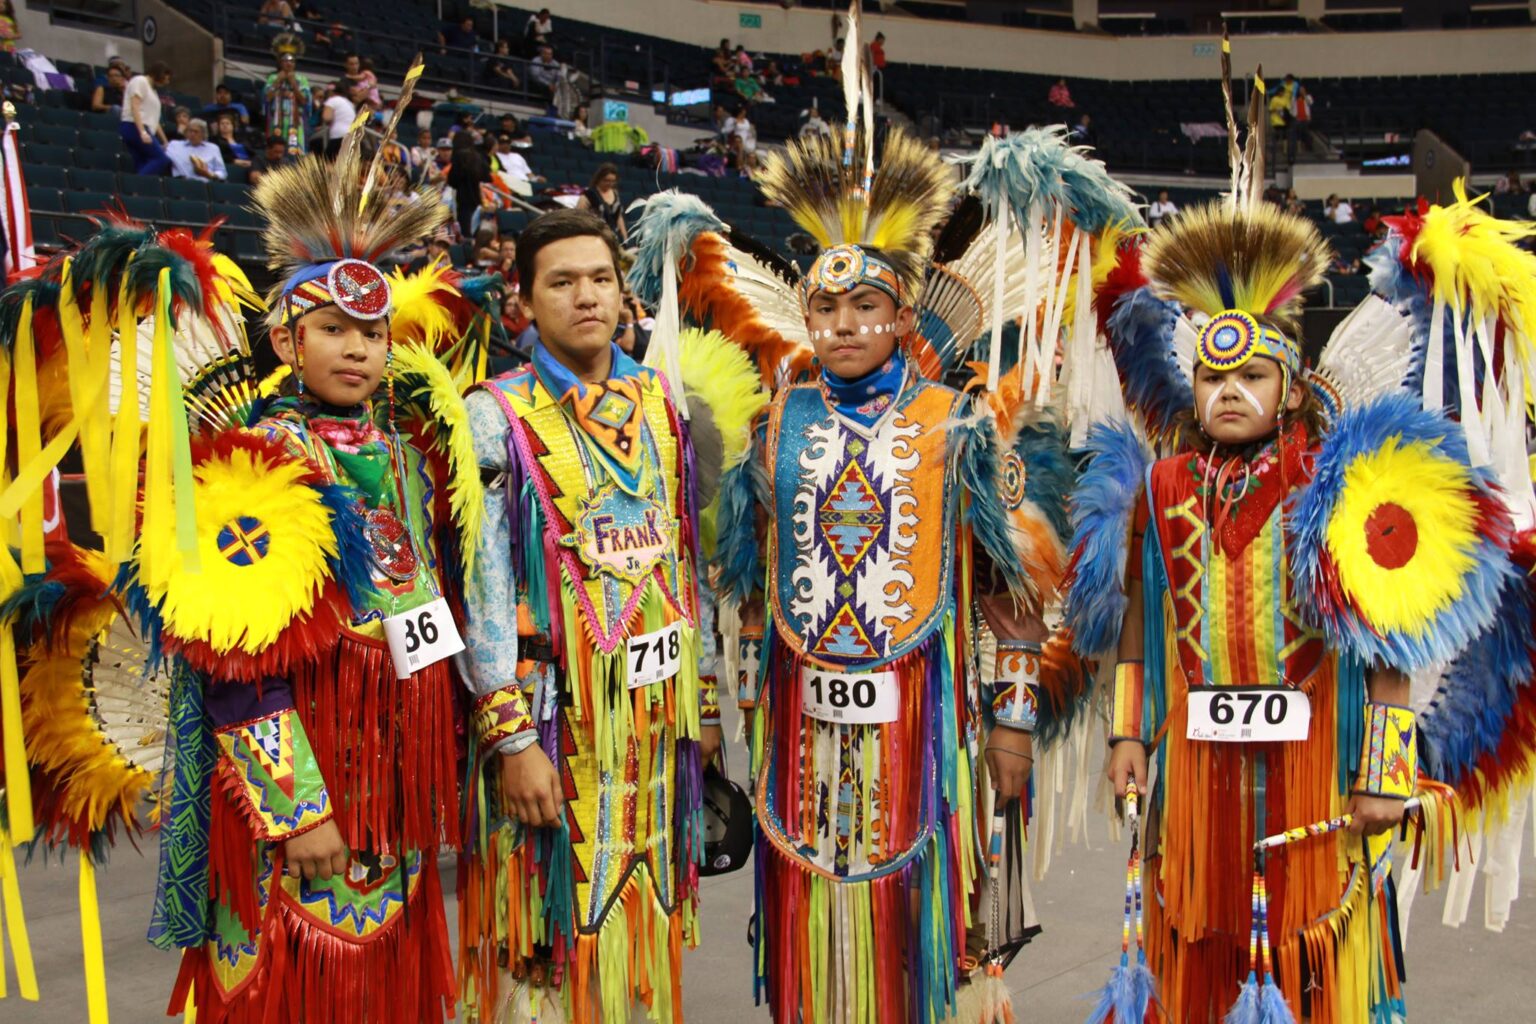 Canada's largest aboriginal festival starts next week in Winnipeg